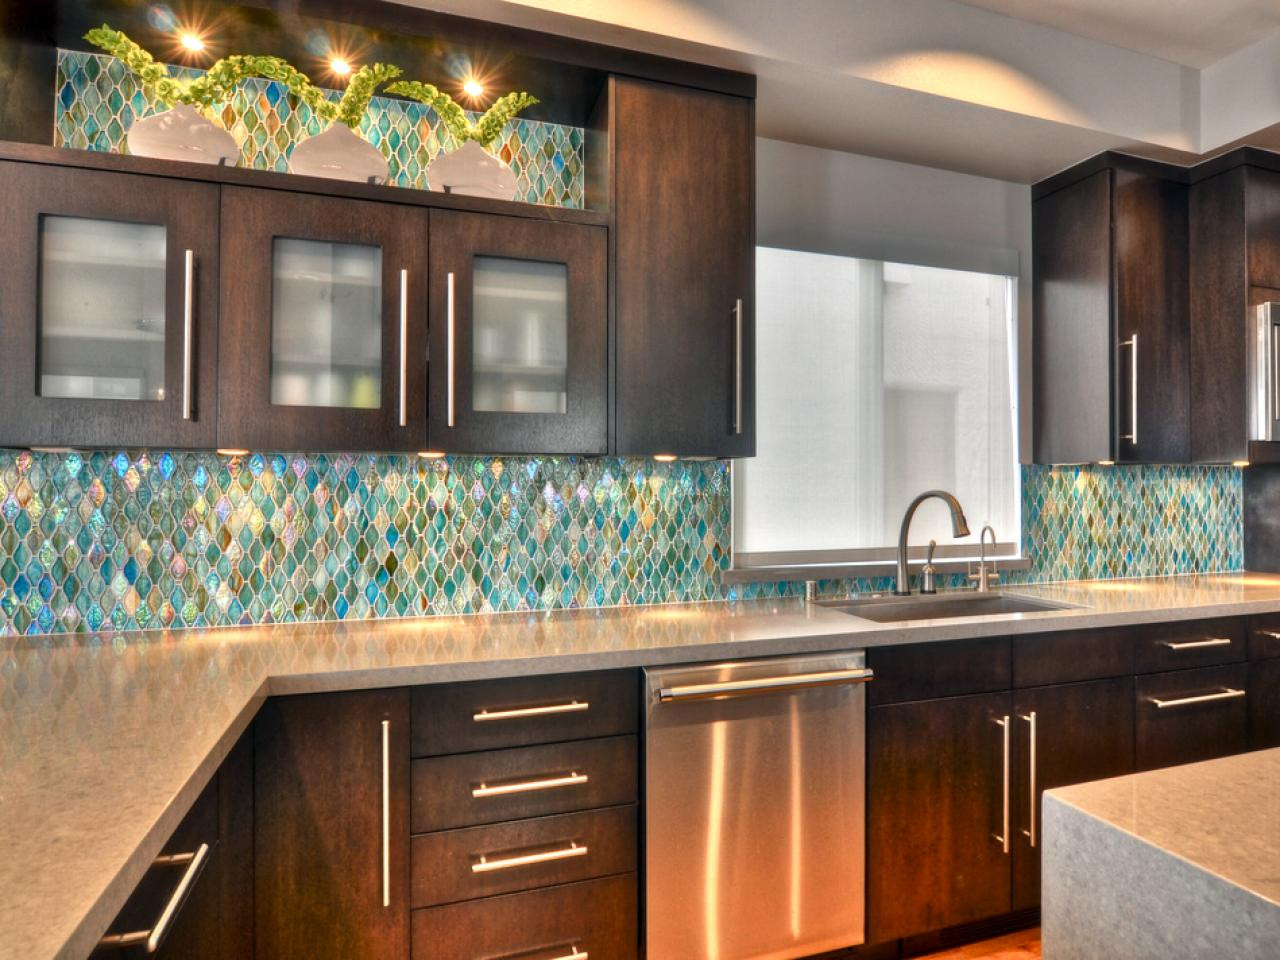 Kitchen With Glass Tile Backsplash
 75 Kitchen Backsplash Ideas for 2020 Tile Glass Metal etc